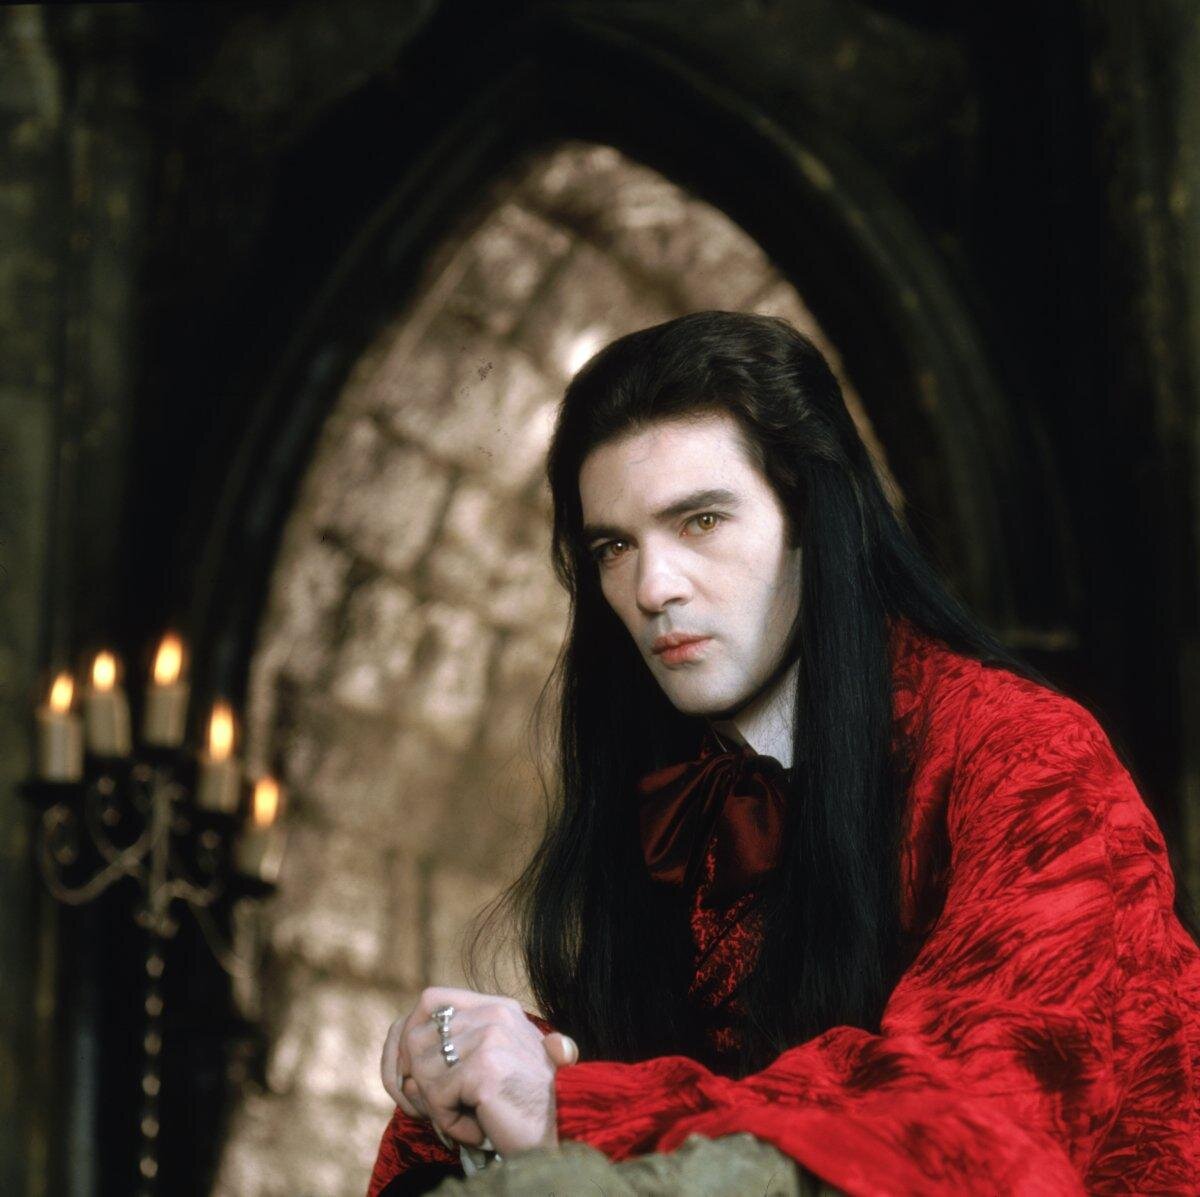 Луи де пон де лак. Антонио Бандерас интервью с вампиром. Интервью с вампиром 1994 Луи де Пон дю.